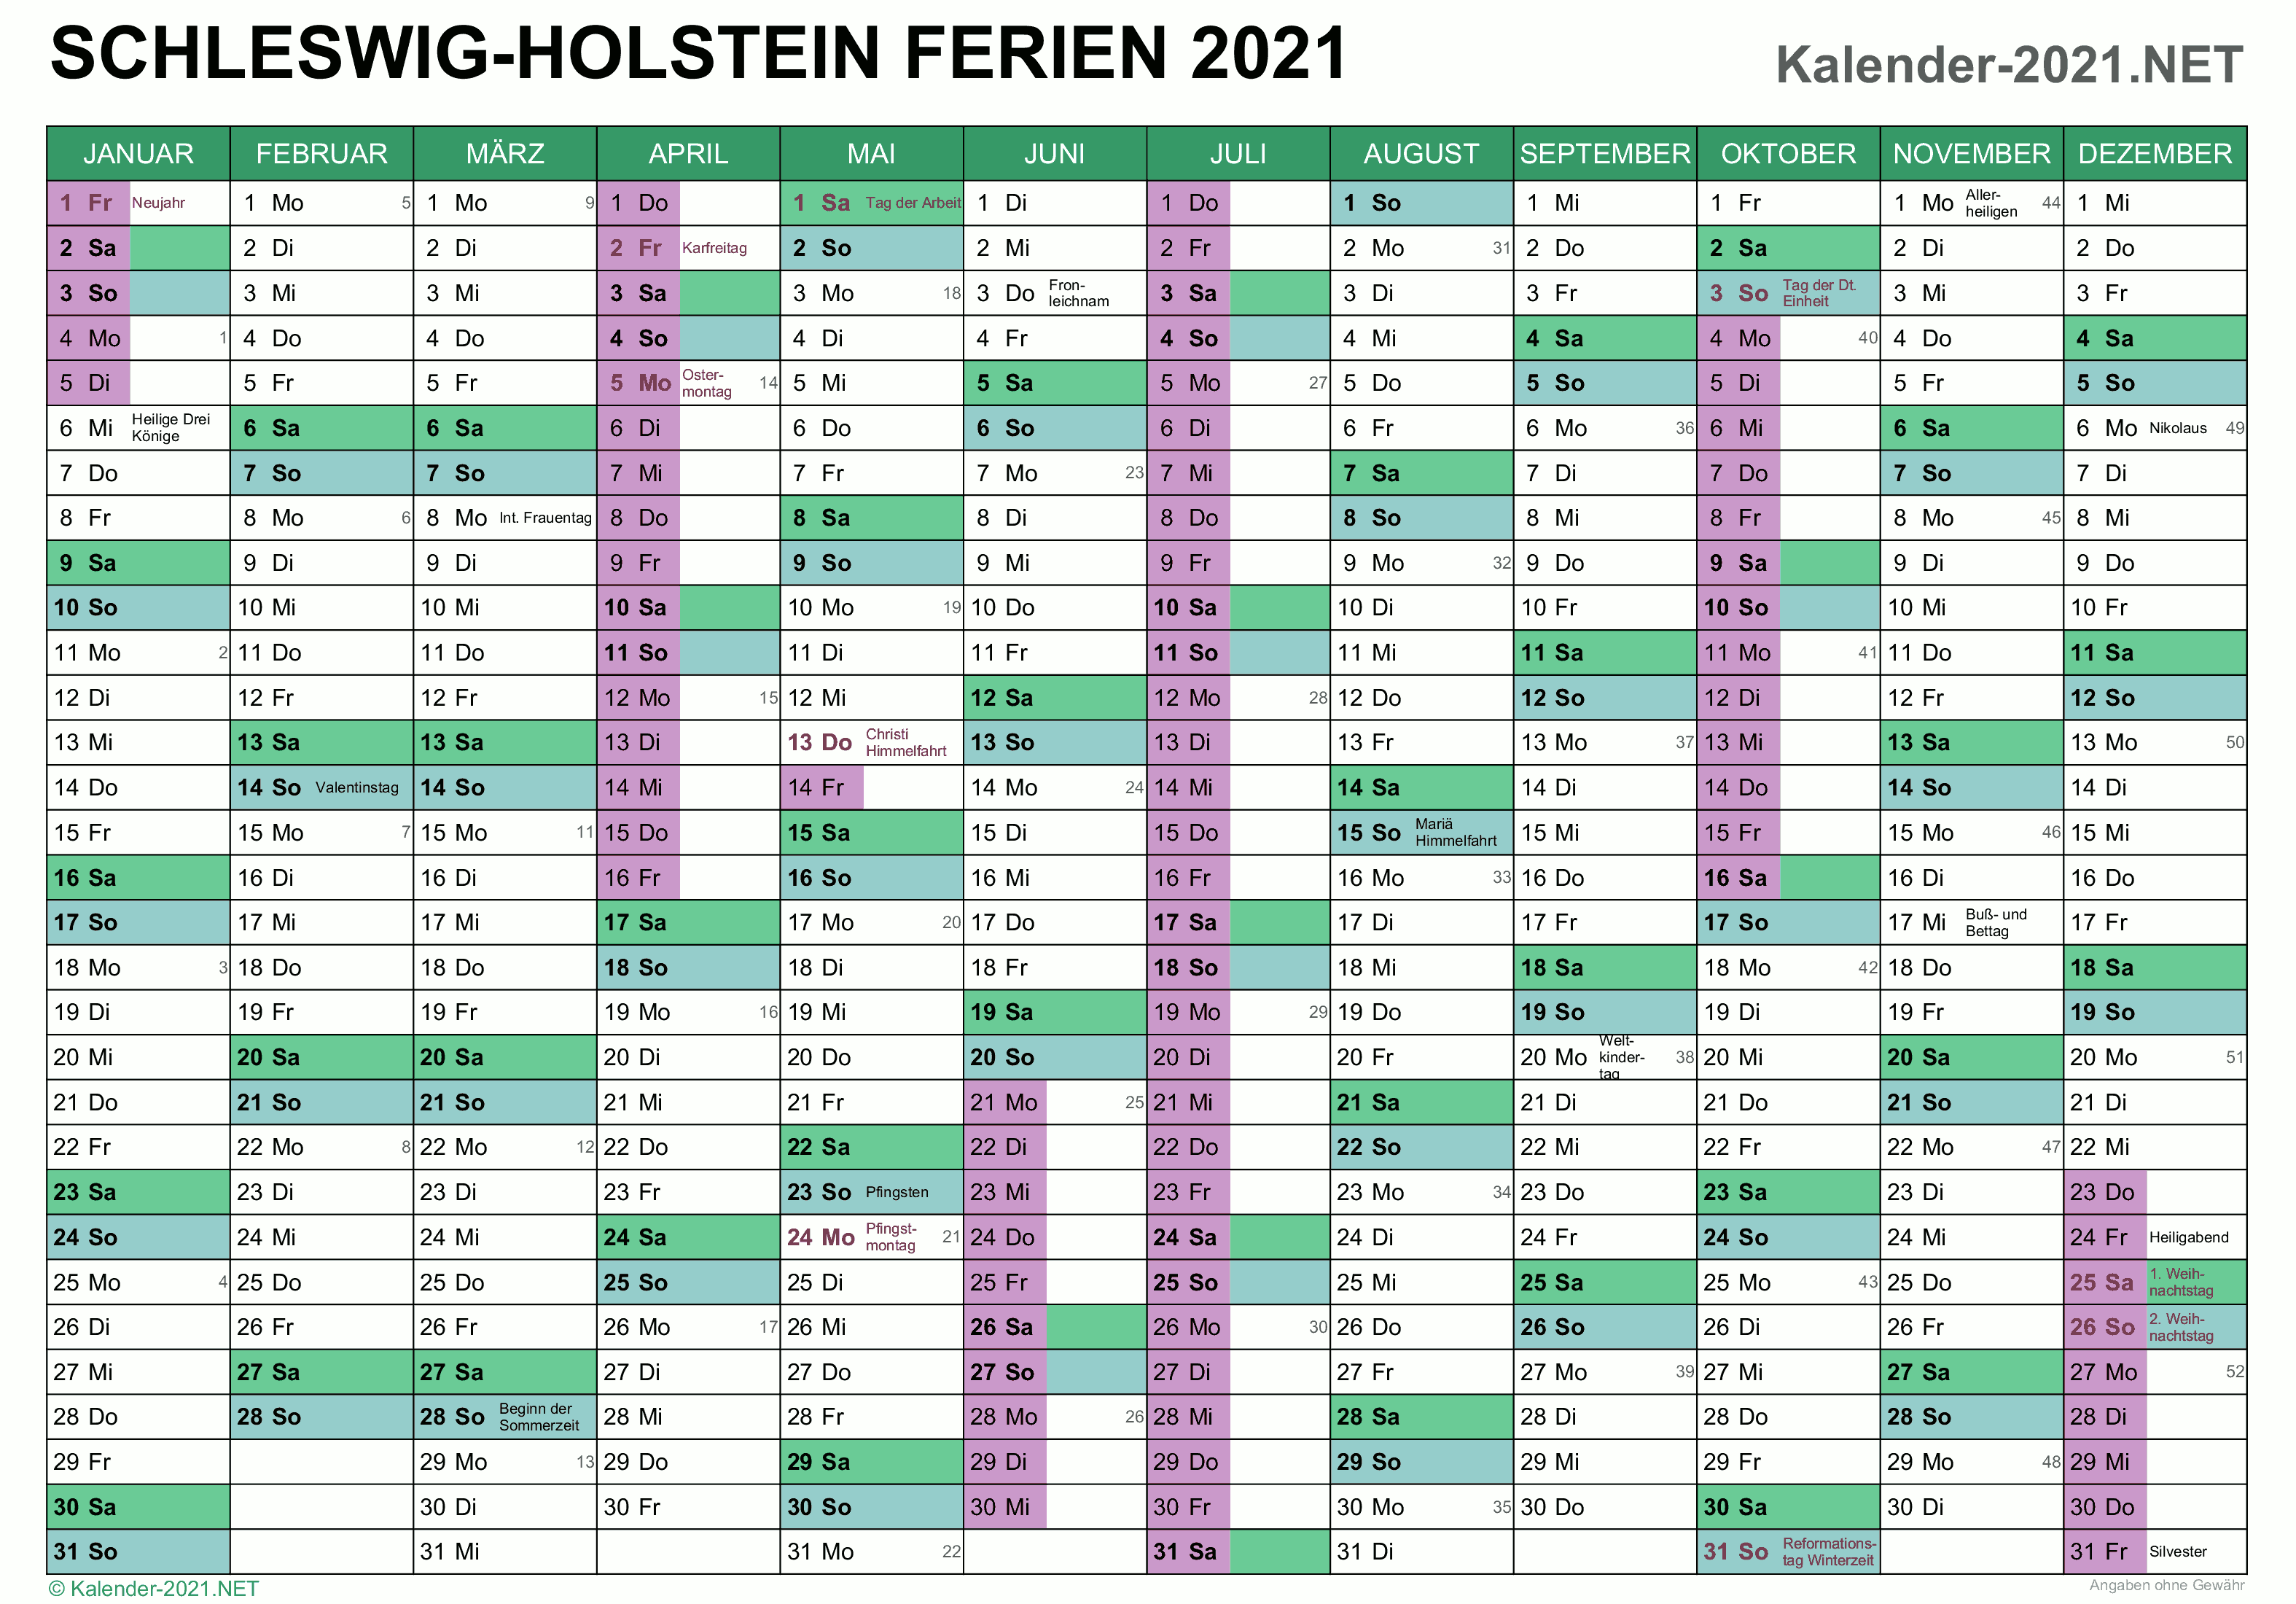 FERIEN Schleswig-Holstein 2021 - Ferienkalender & Übersicht